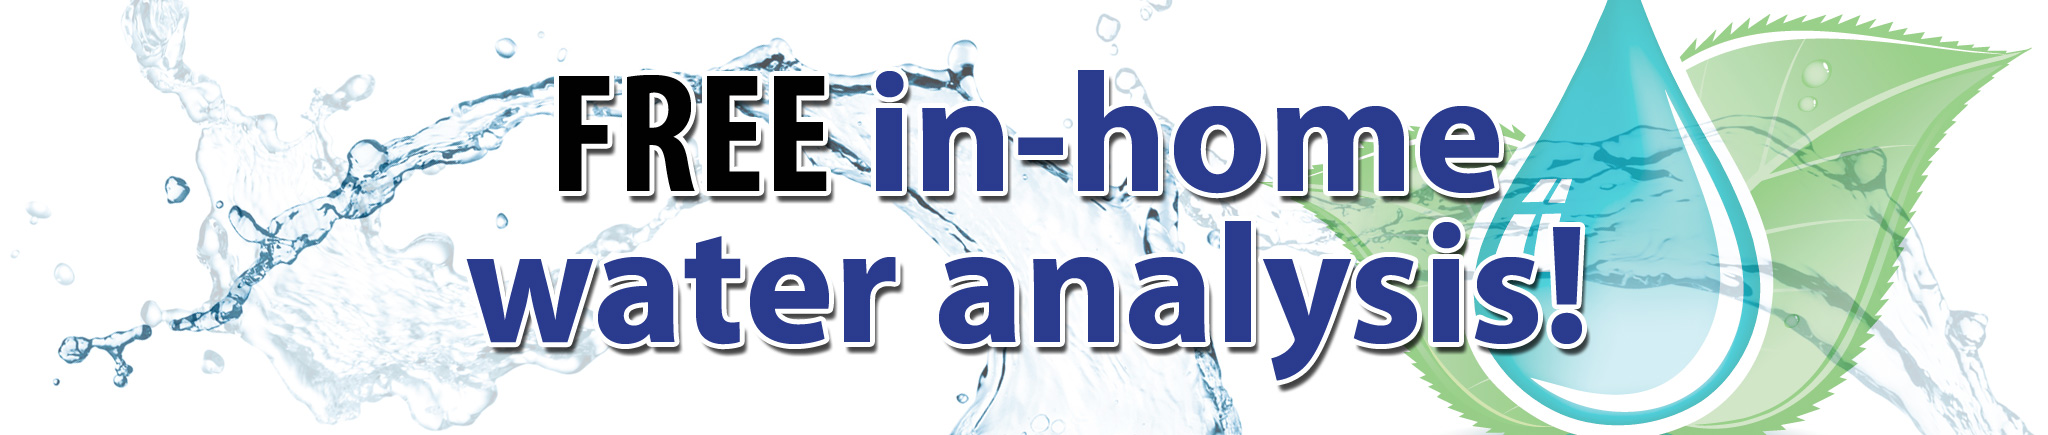 Free in-home water analysis in Ottawa and the Glengarry and Prescott-Russell regions-Water Analysis Ottawa